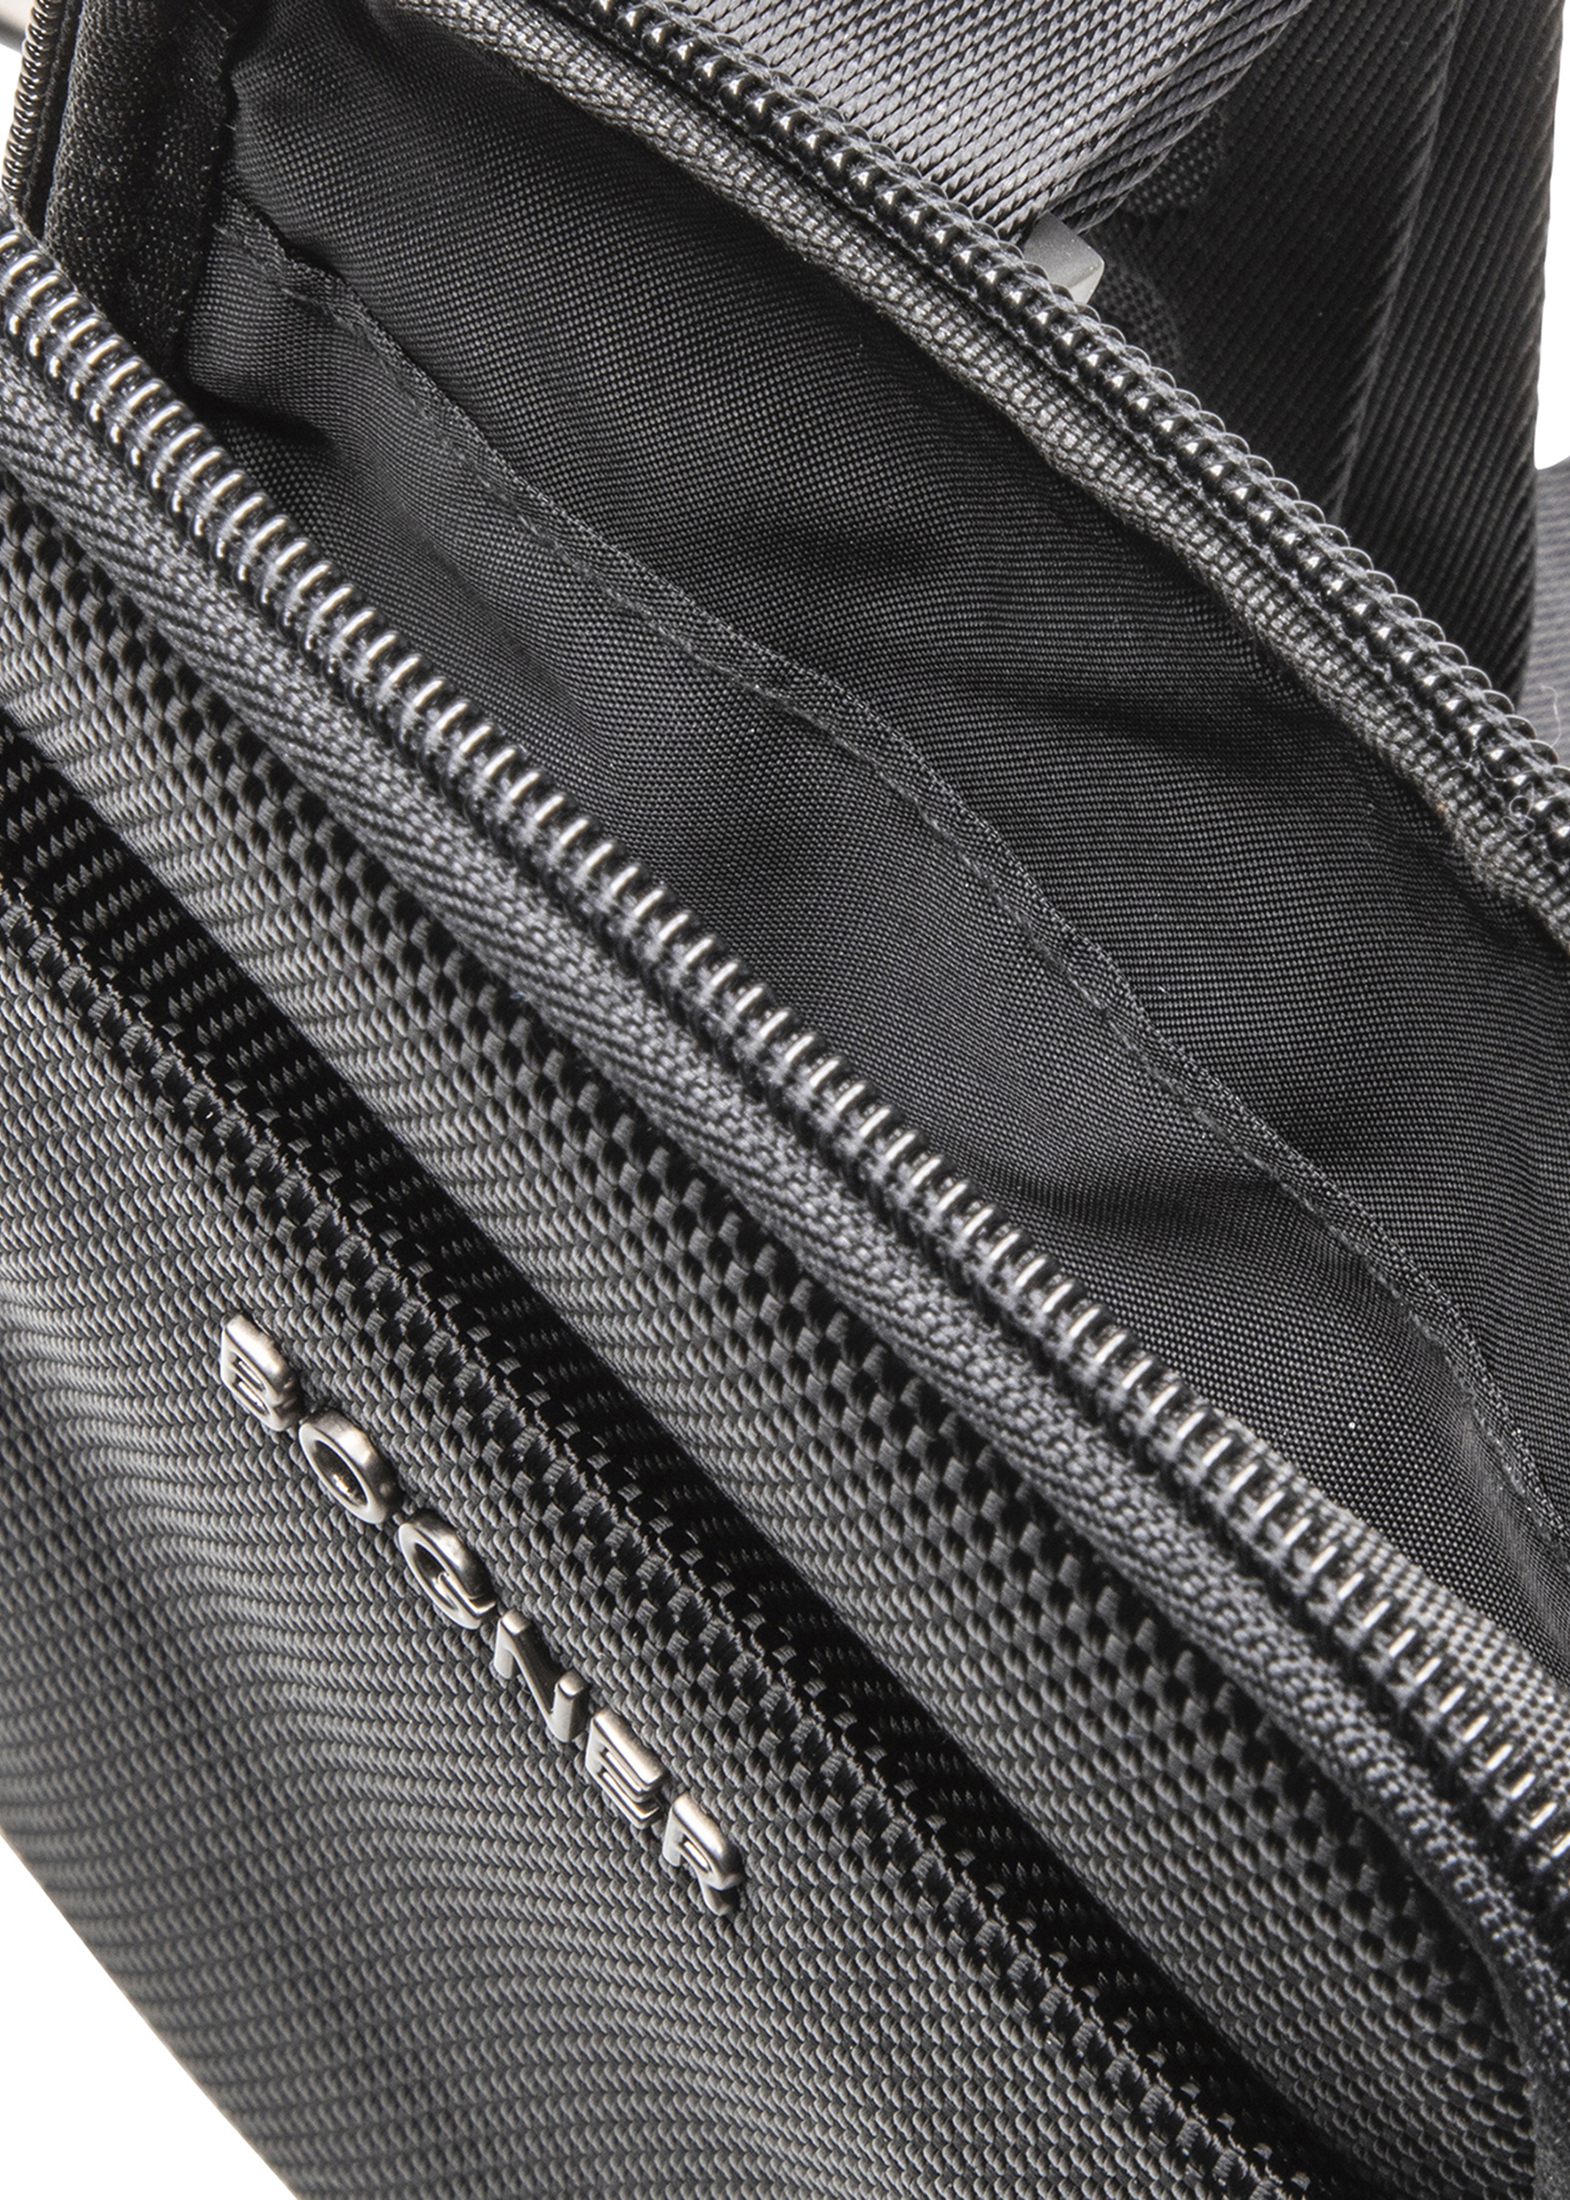 keystone frank shoulderbag xsvz black image number 3